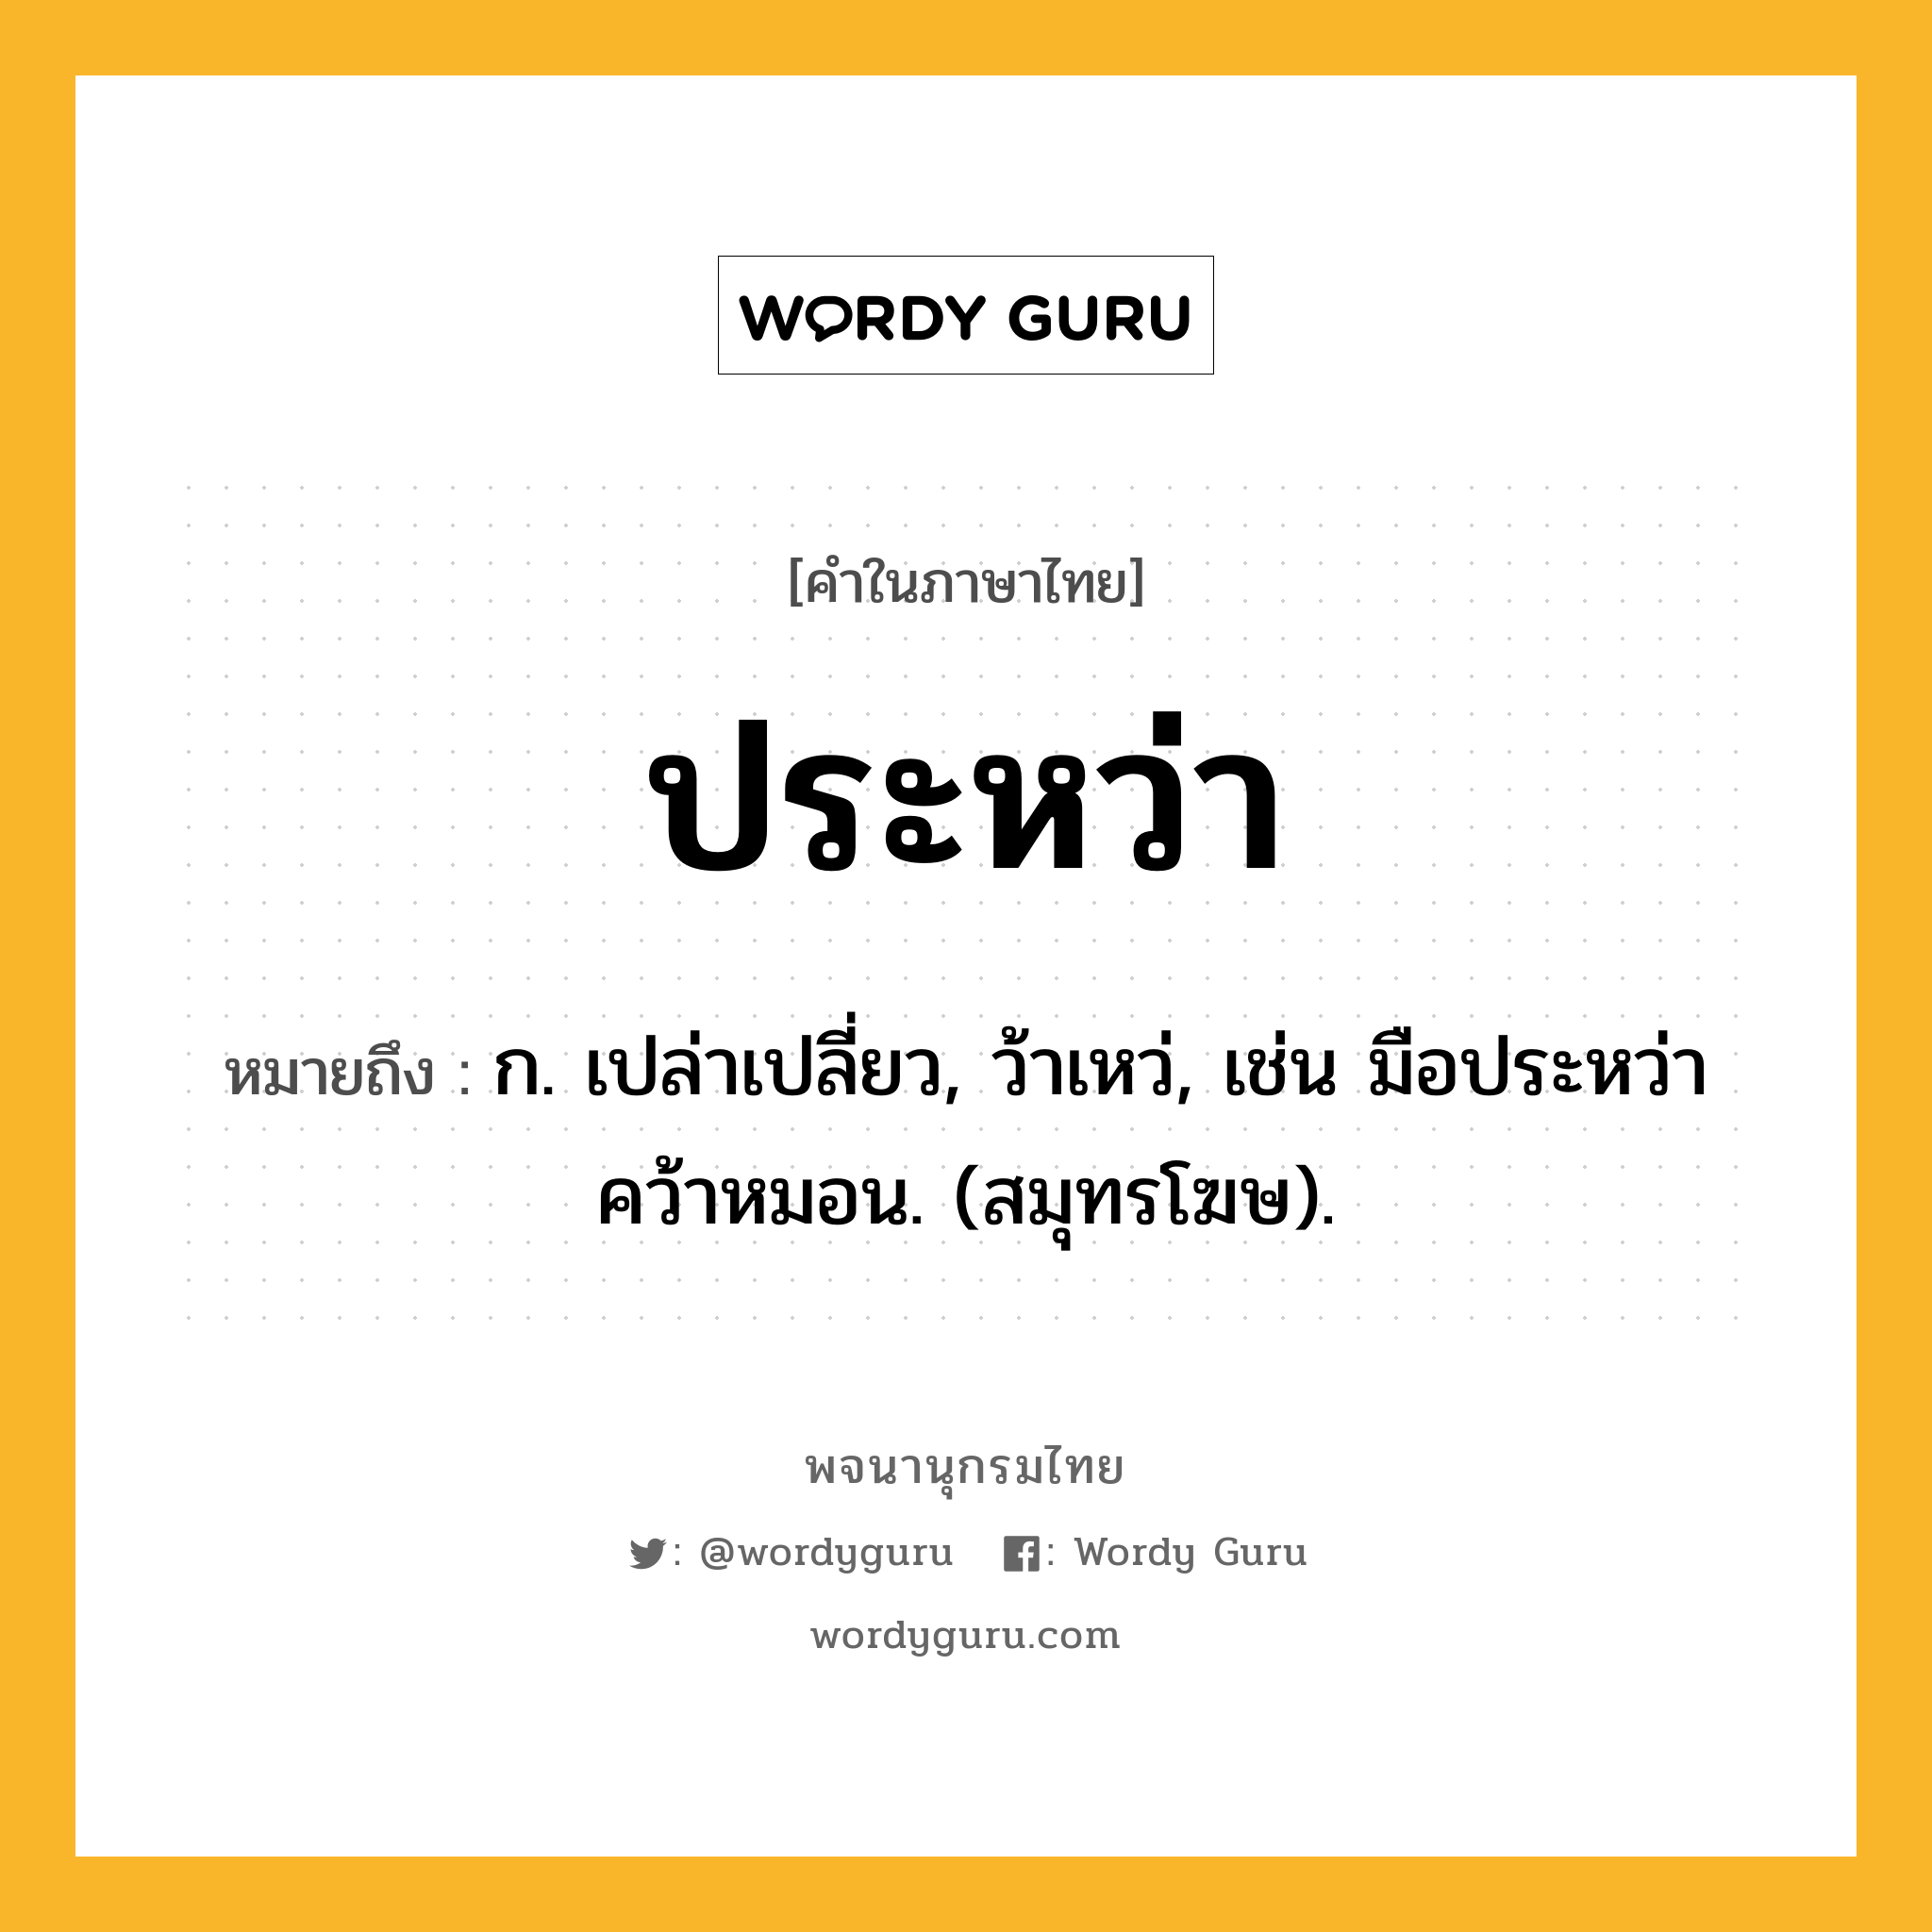 ประหว่า หมายถึงอะไร?, คำในภาษาไทย ประหว่า หมายถึง ก. เปล่าเปลี่ยว, ว้าเหว่, เช่น มือประหว่าคว้าหมอน. (สมุทรโฆษ).